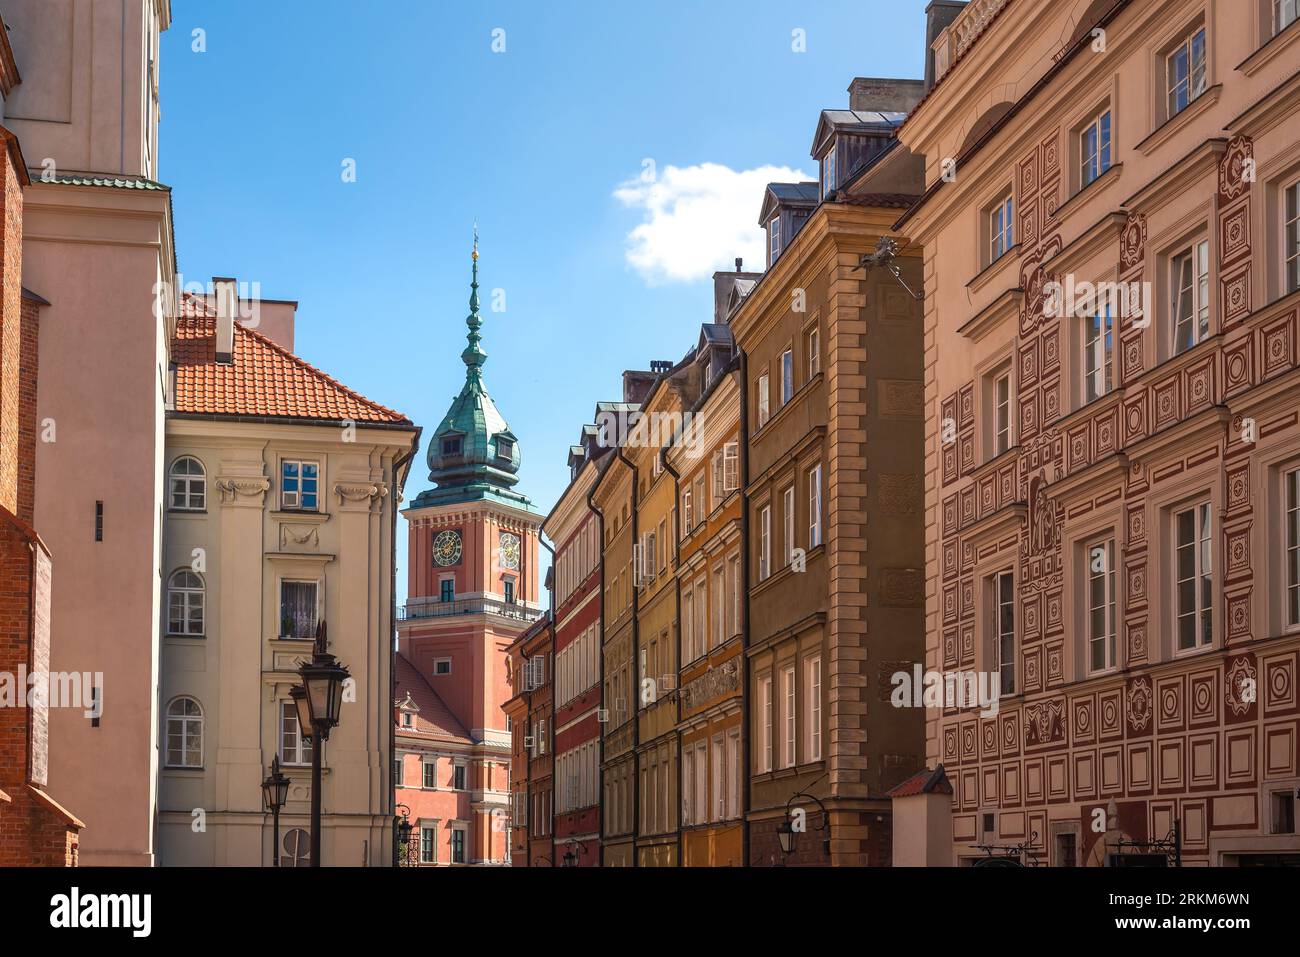 Rue dans la vieille ville avec Tour de l'horloge du château royal - Varsovie, Pologne Banque D'Images